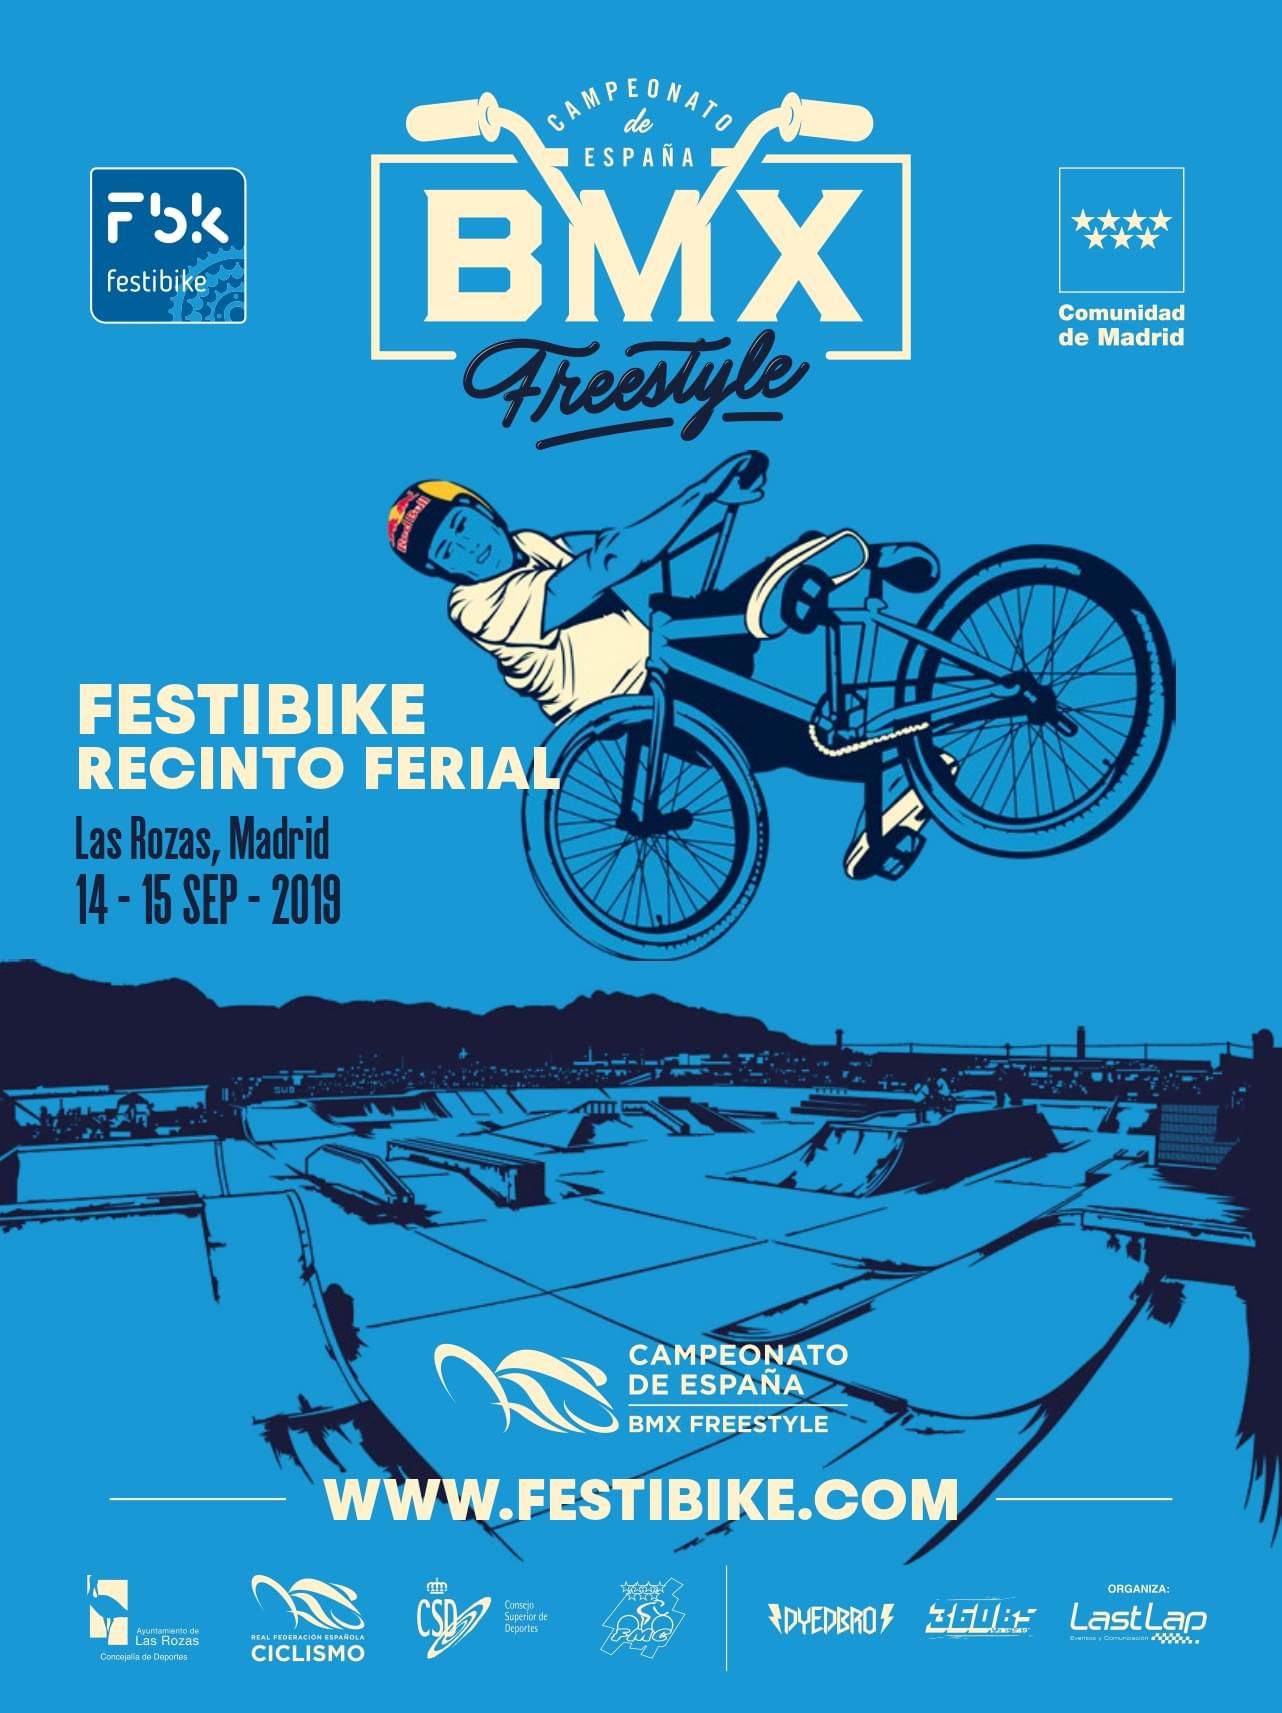 El Campeonato de España de BMX Free Style se celebrará en Festibike